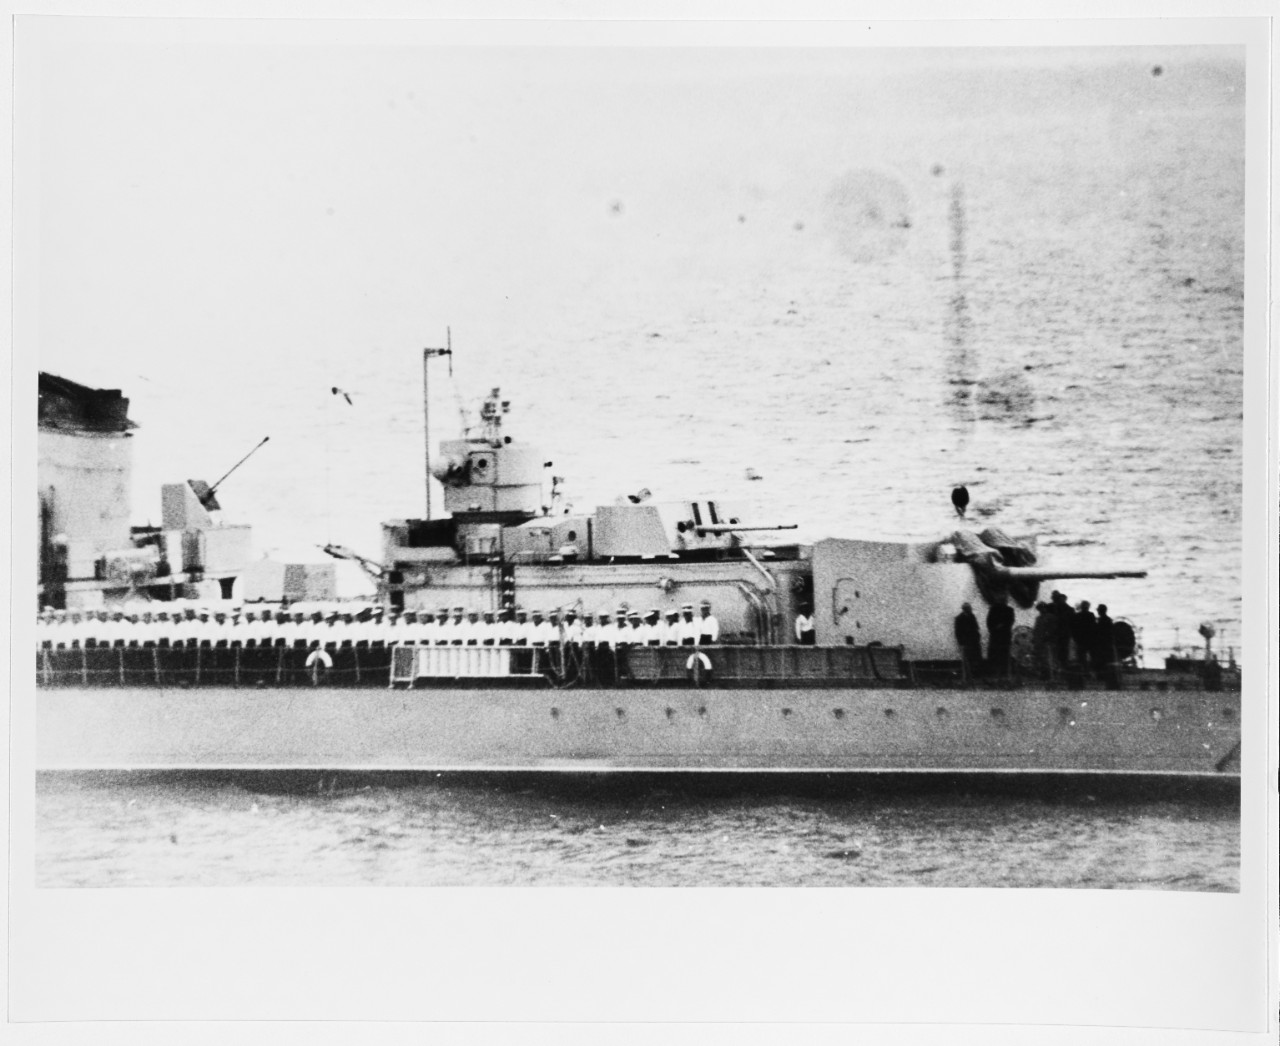 ODARENNYI (Soviet Destroyer, 1941-circa 1960)